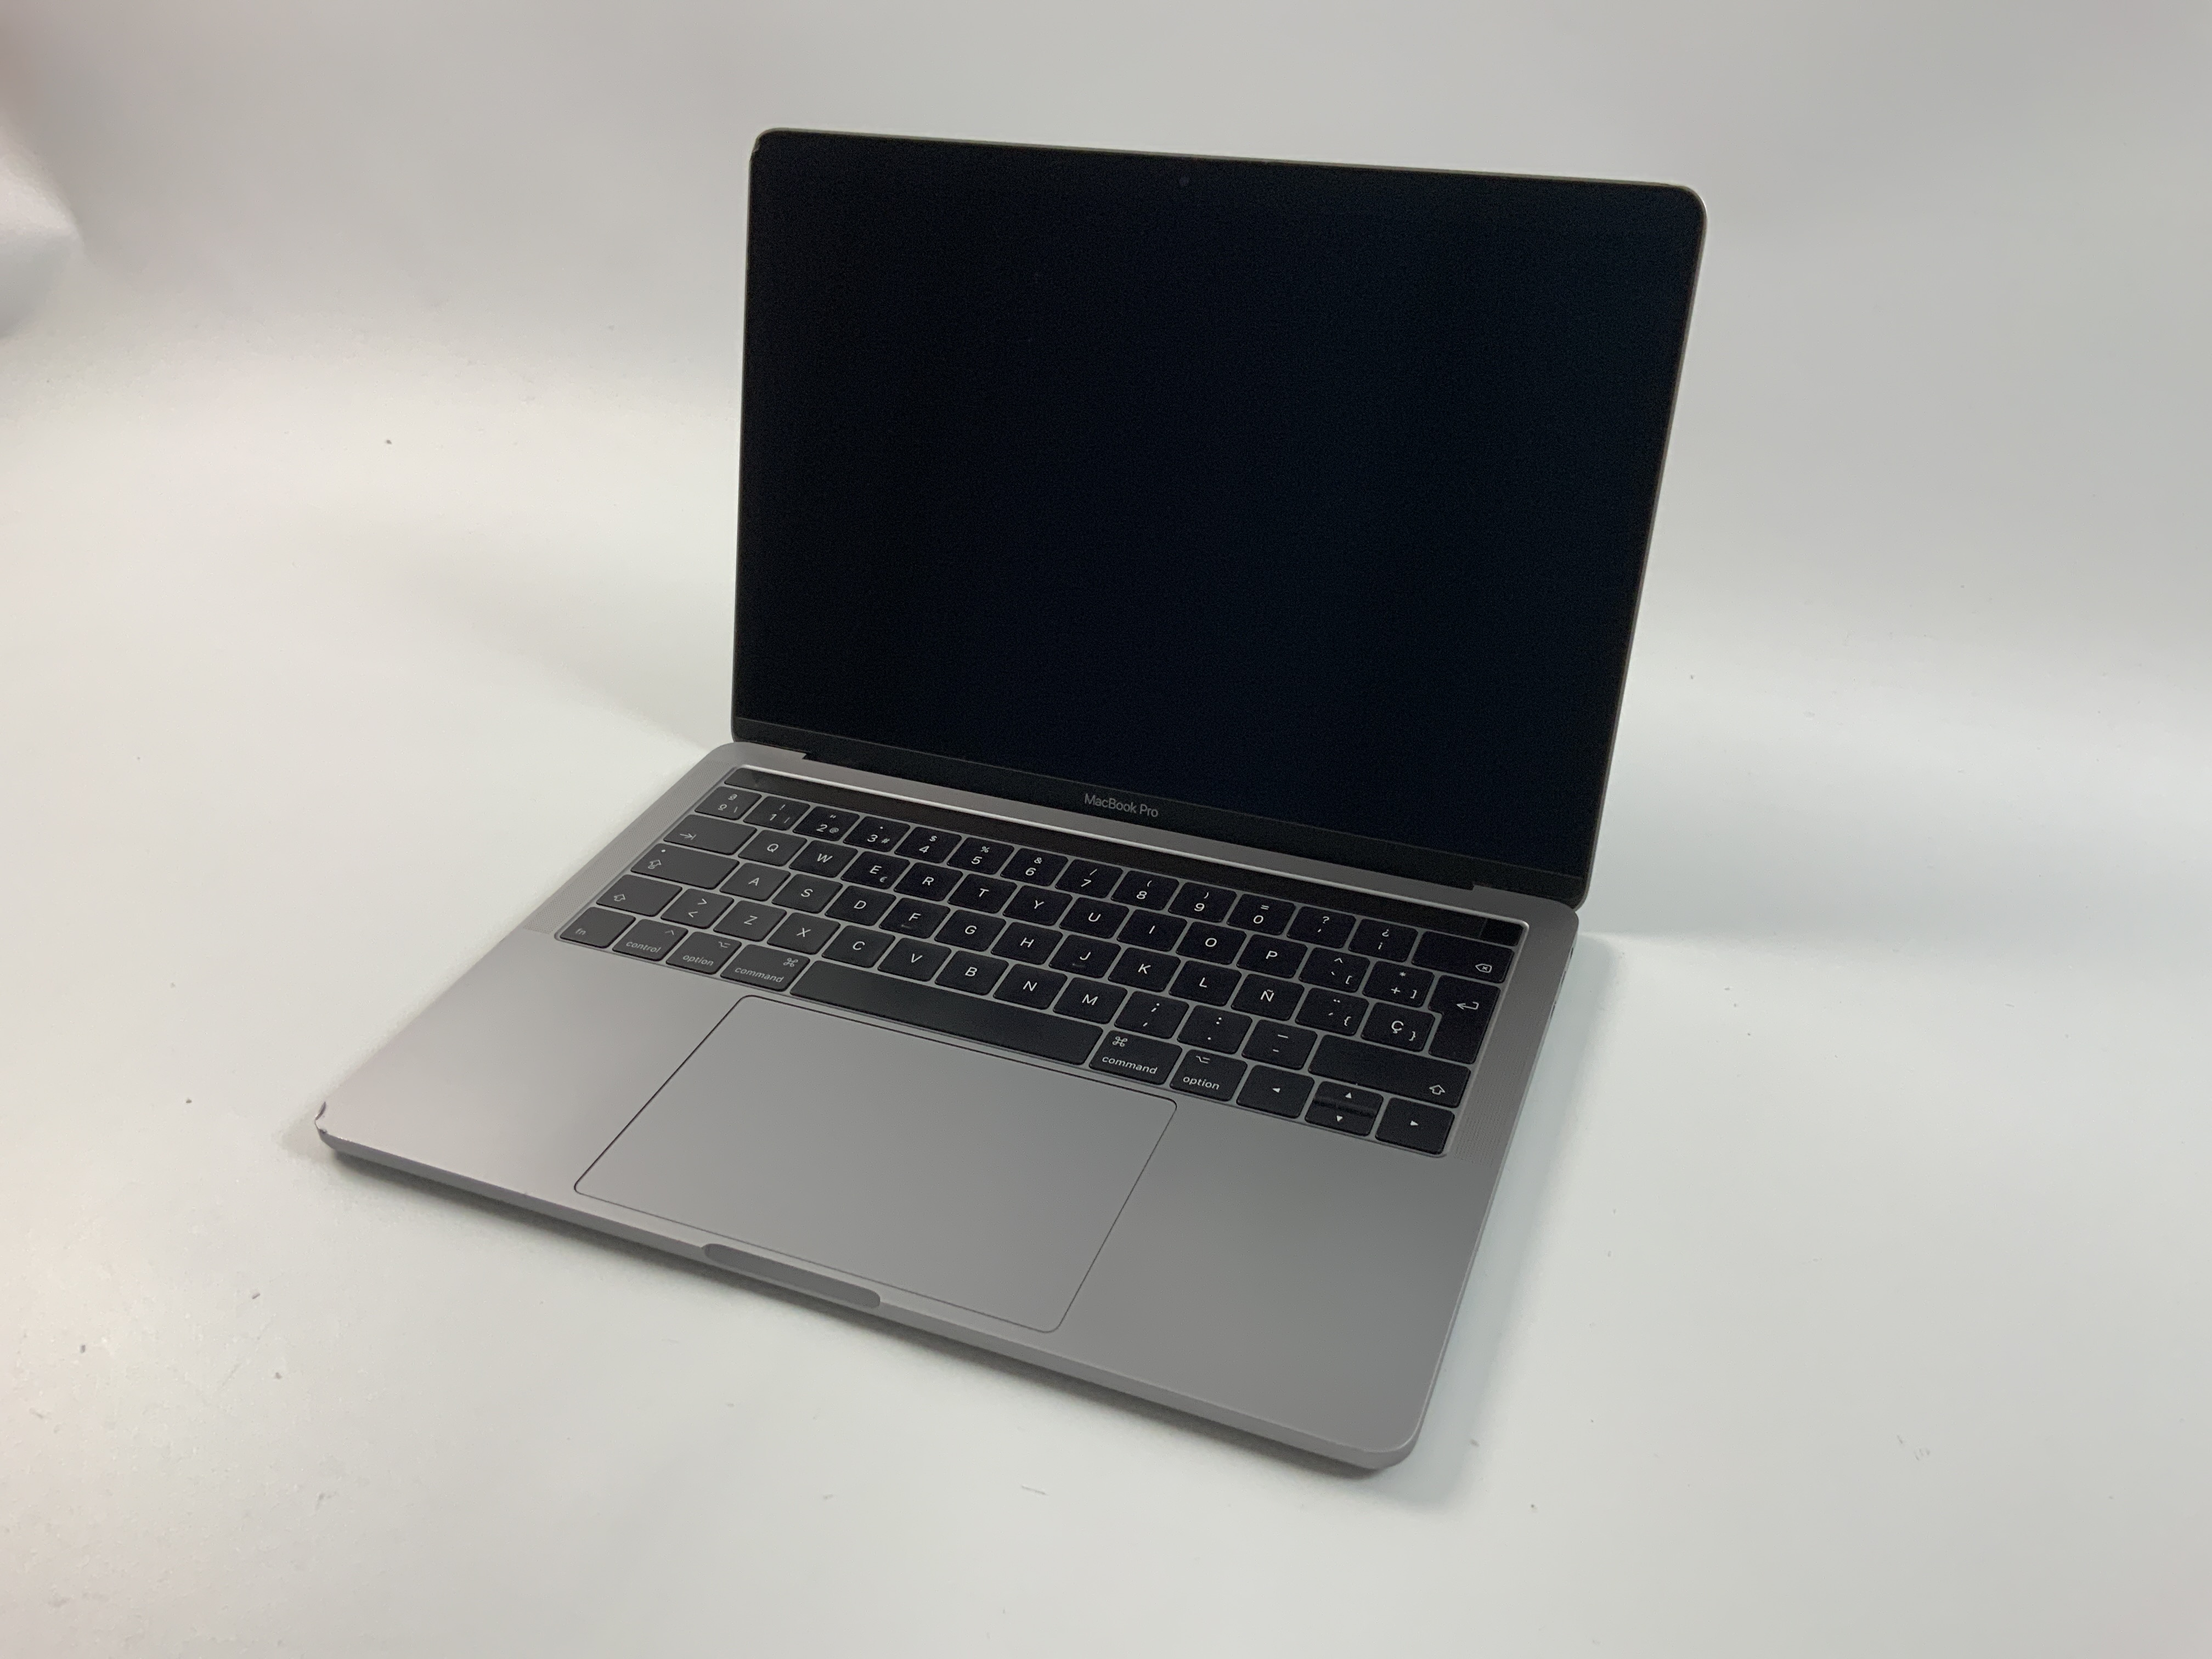 MacBook Pro 13" 4TBT Mid 2017 (Intel Core i5 3.1 GHz 16 GB RAM 256 GB SSD), Space Gray, Intel Core i5 3.1 GHz, 16 GB RAM, 256 GB SSD, Kuva 1